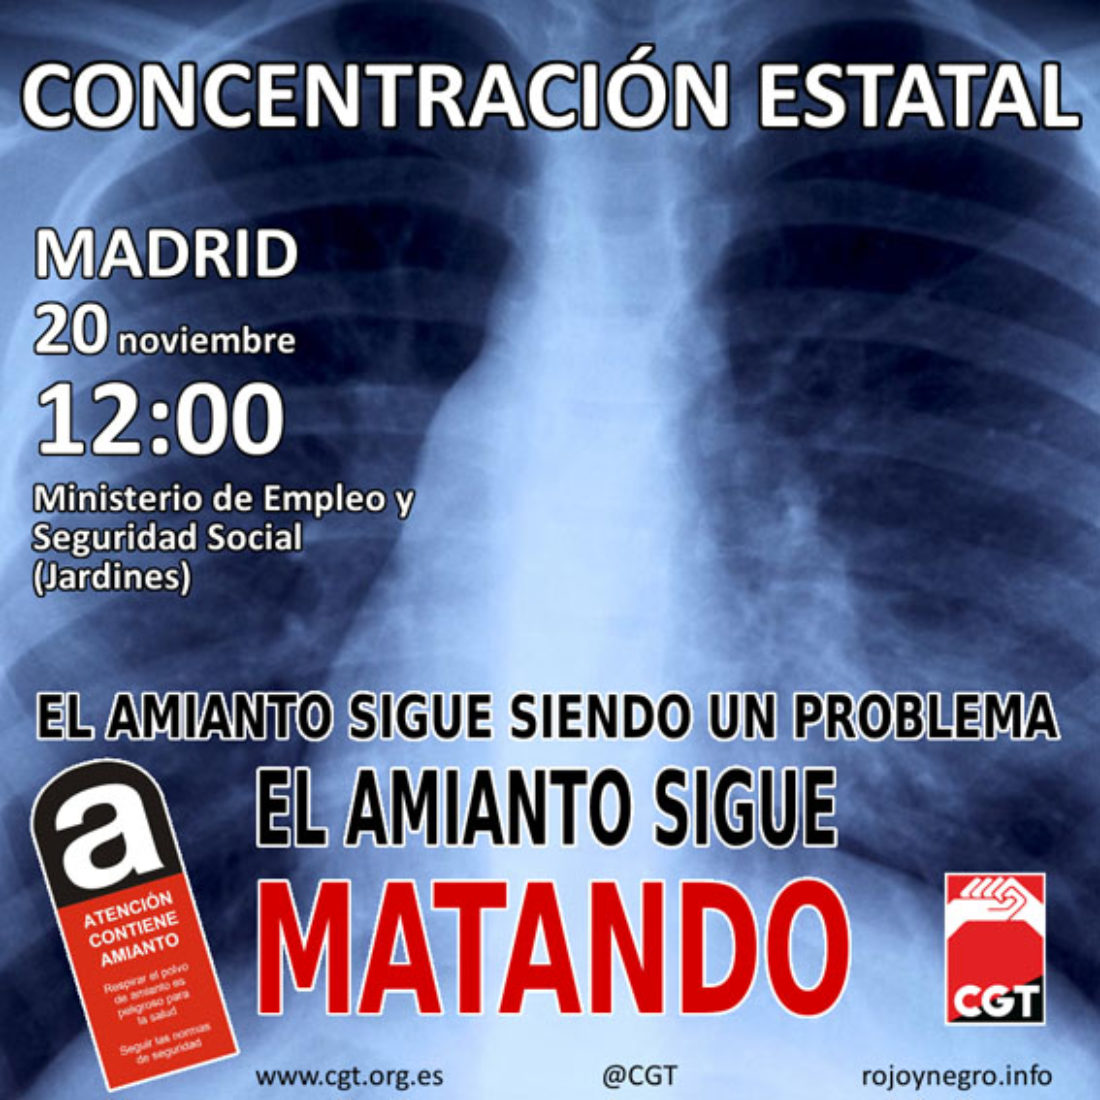 Concentración Estatal en Madrid, 20 nov. 12:00 h. – El Amianto sigue Matando